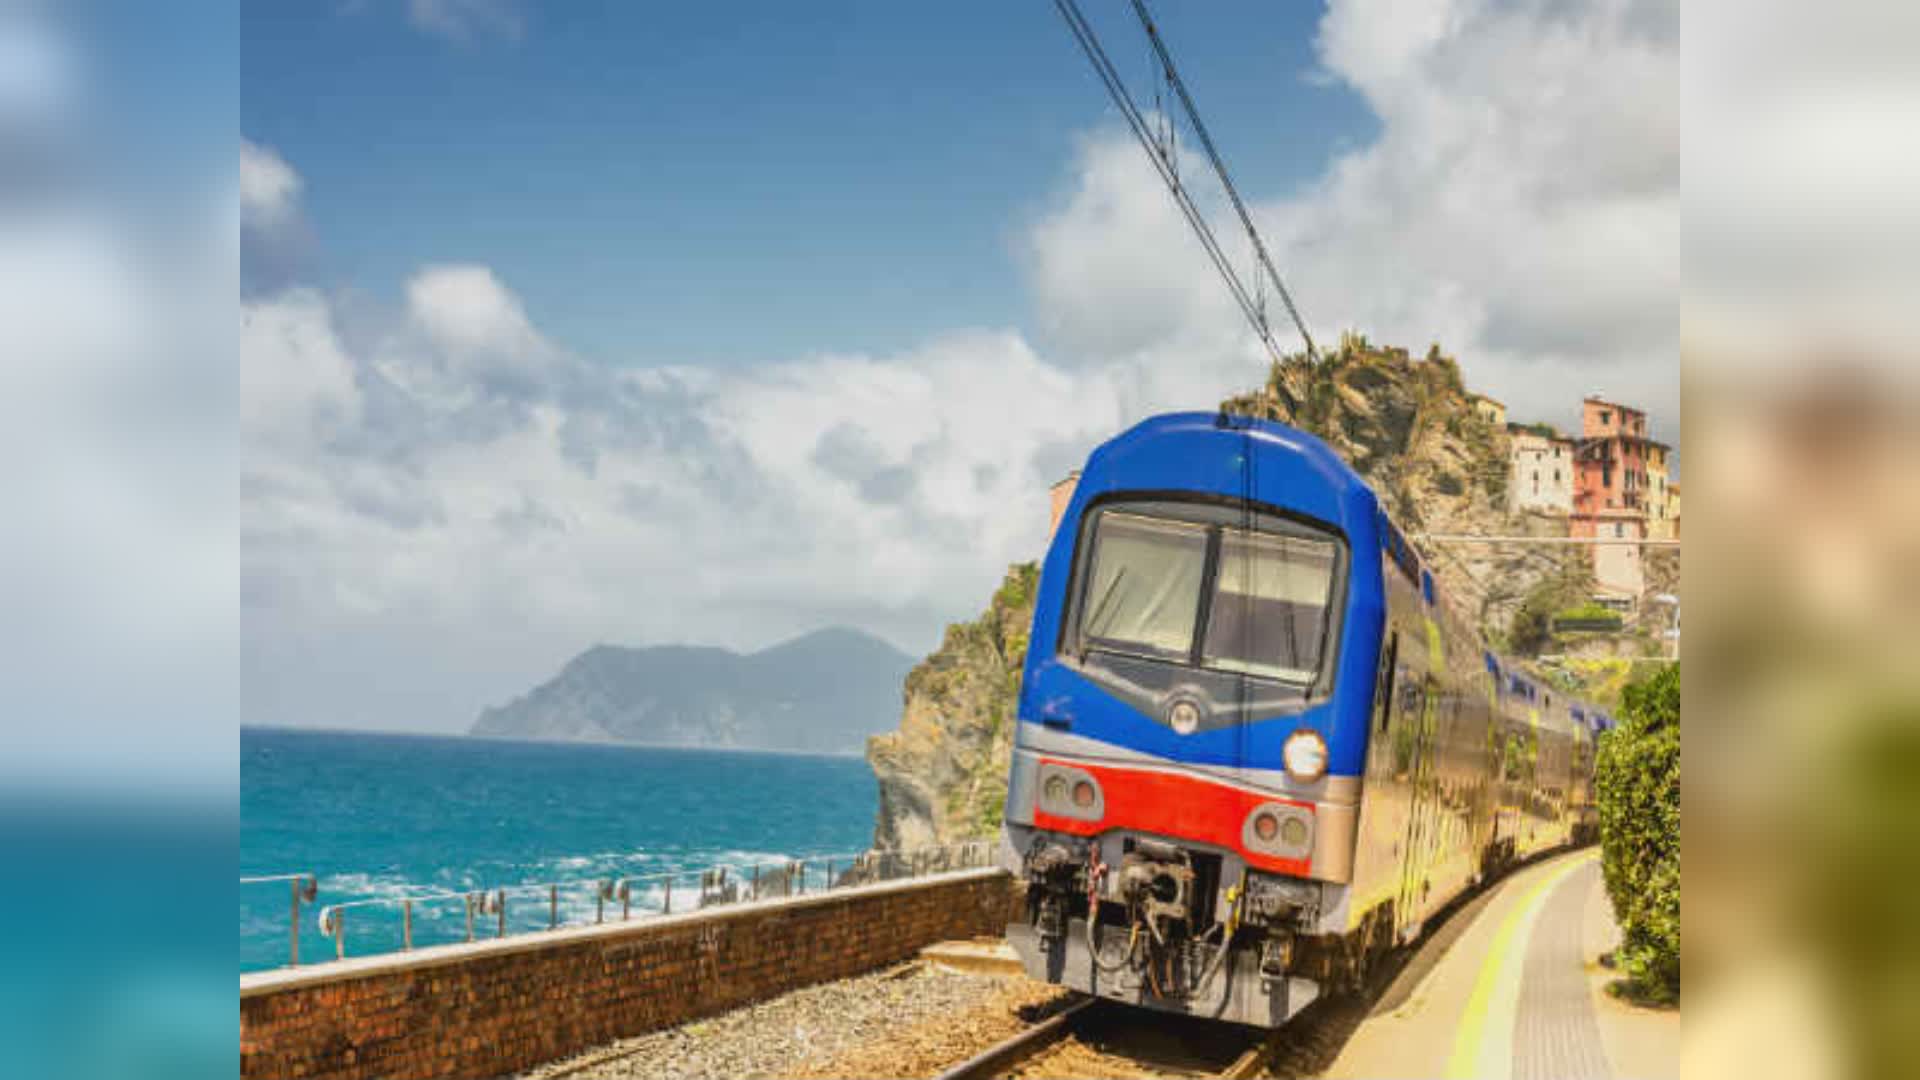 La Spezia: rincari treni Cinque Terre, categorie commerciali in rivolta